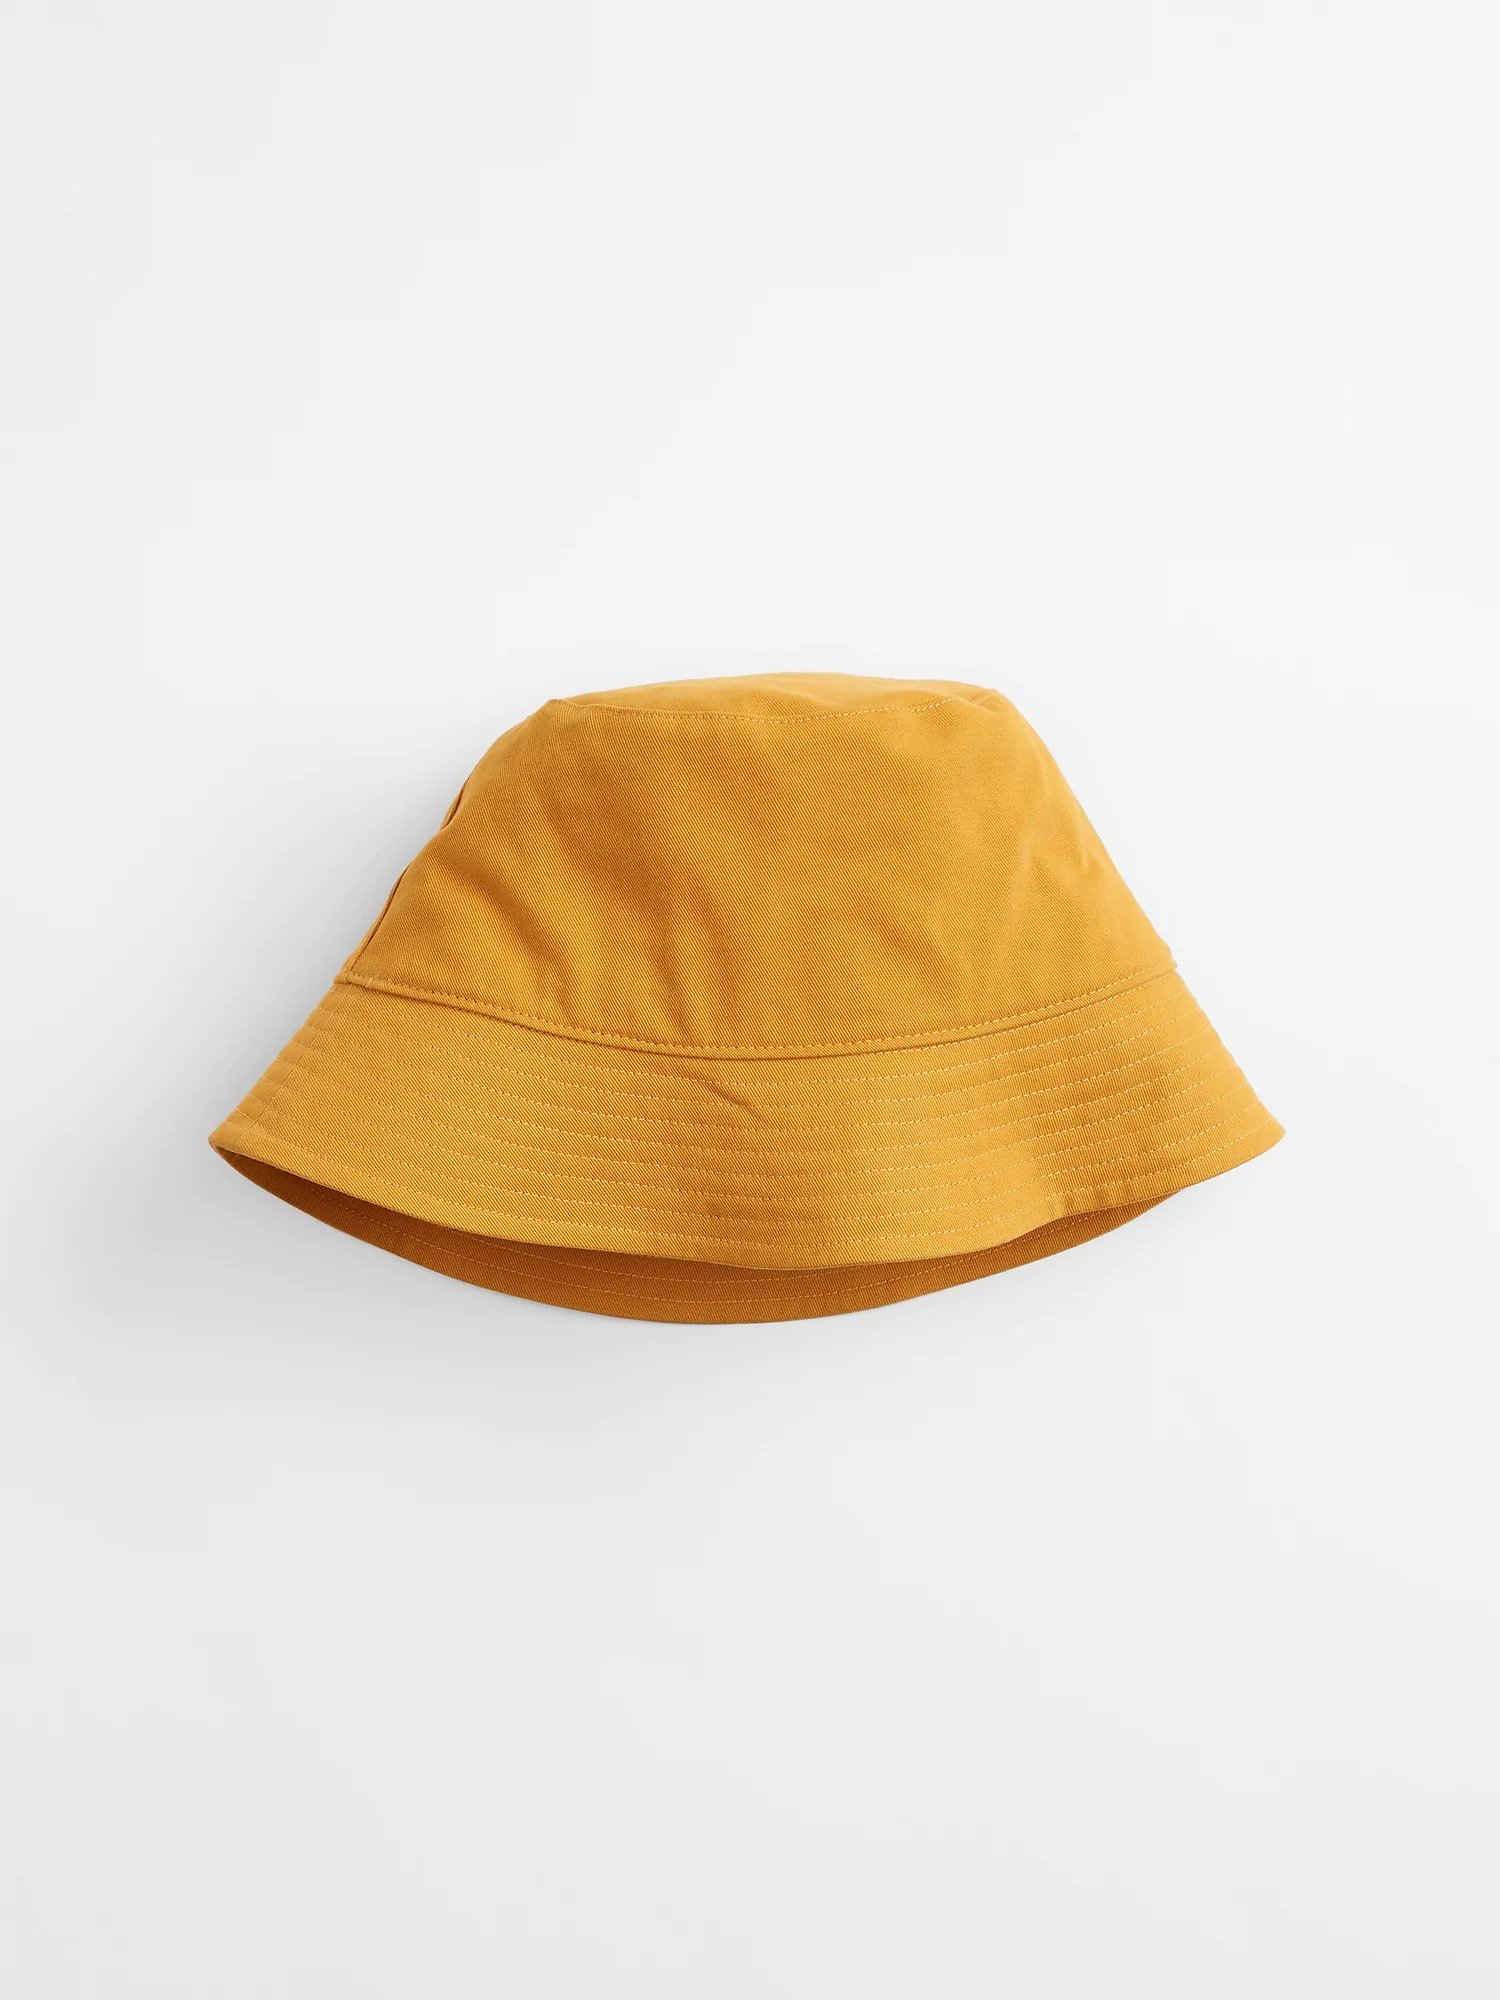 Balıkçı Şapka product image